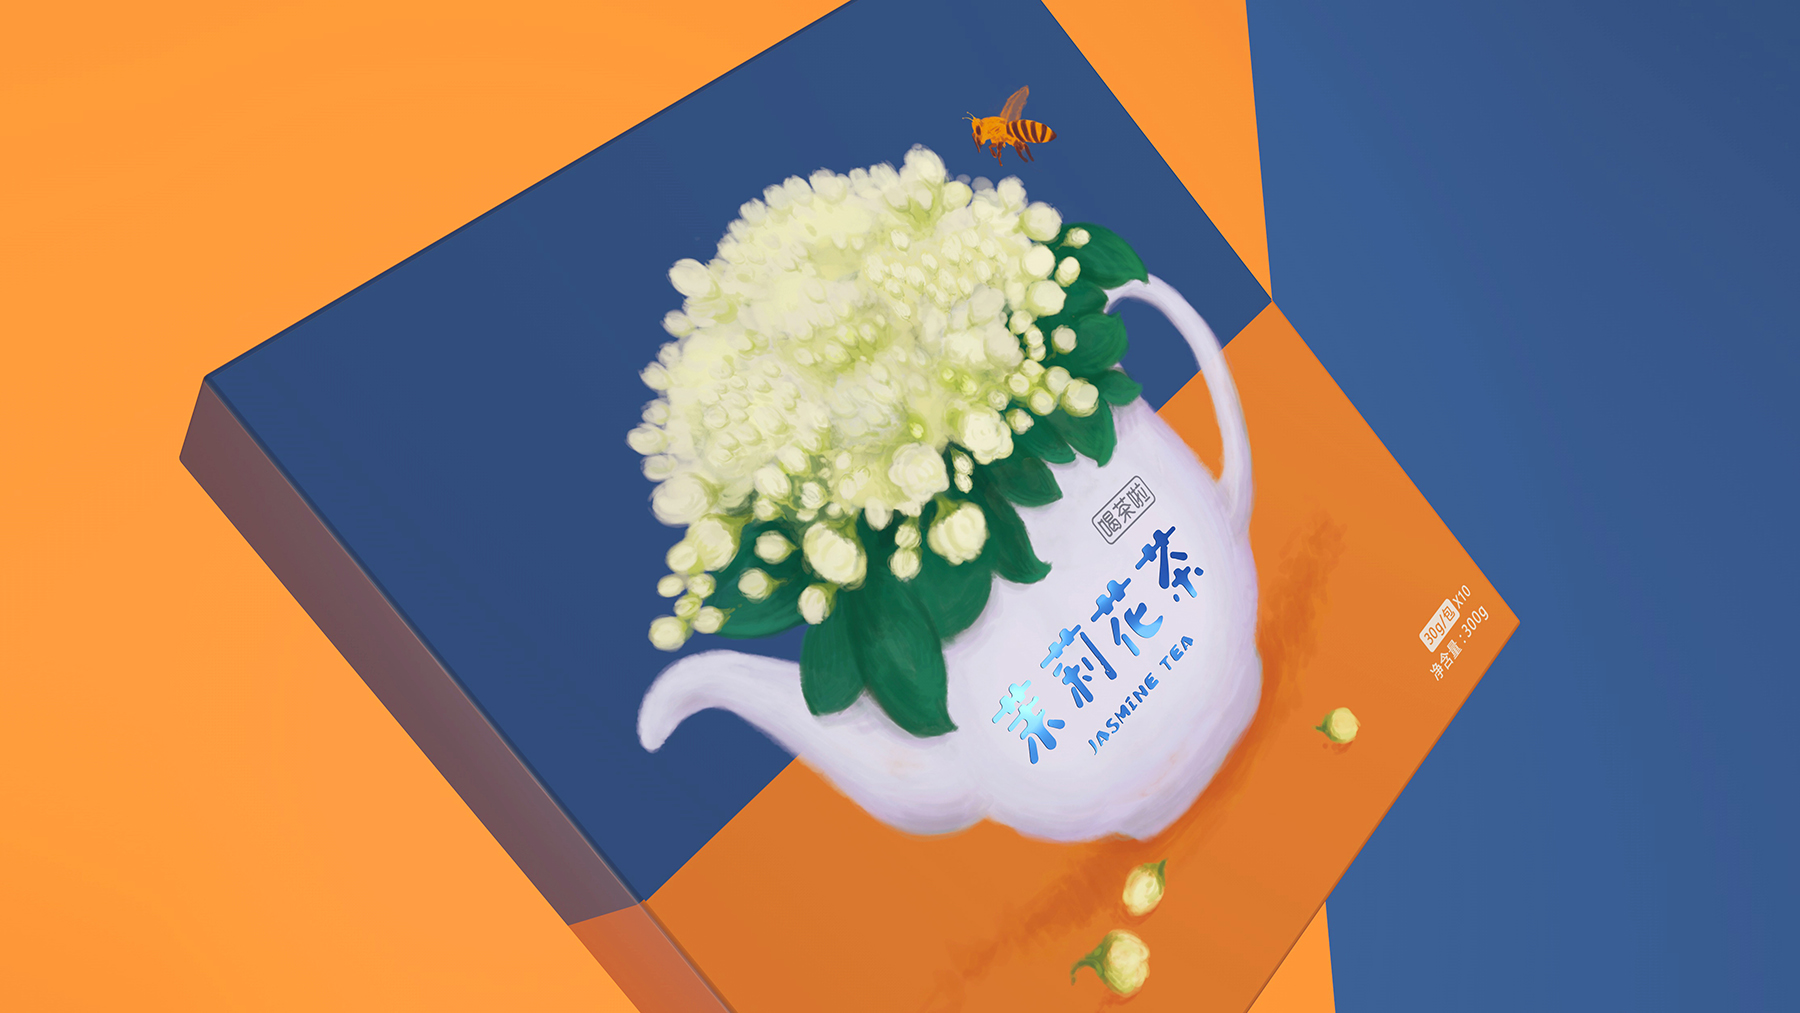 喝茶啦-系列花茶包装设计 手绘花茶包装设计 花茶包装设计哪家好 花茶包装设计公司 第4张